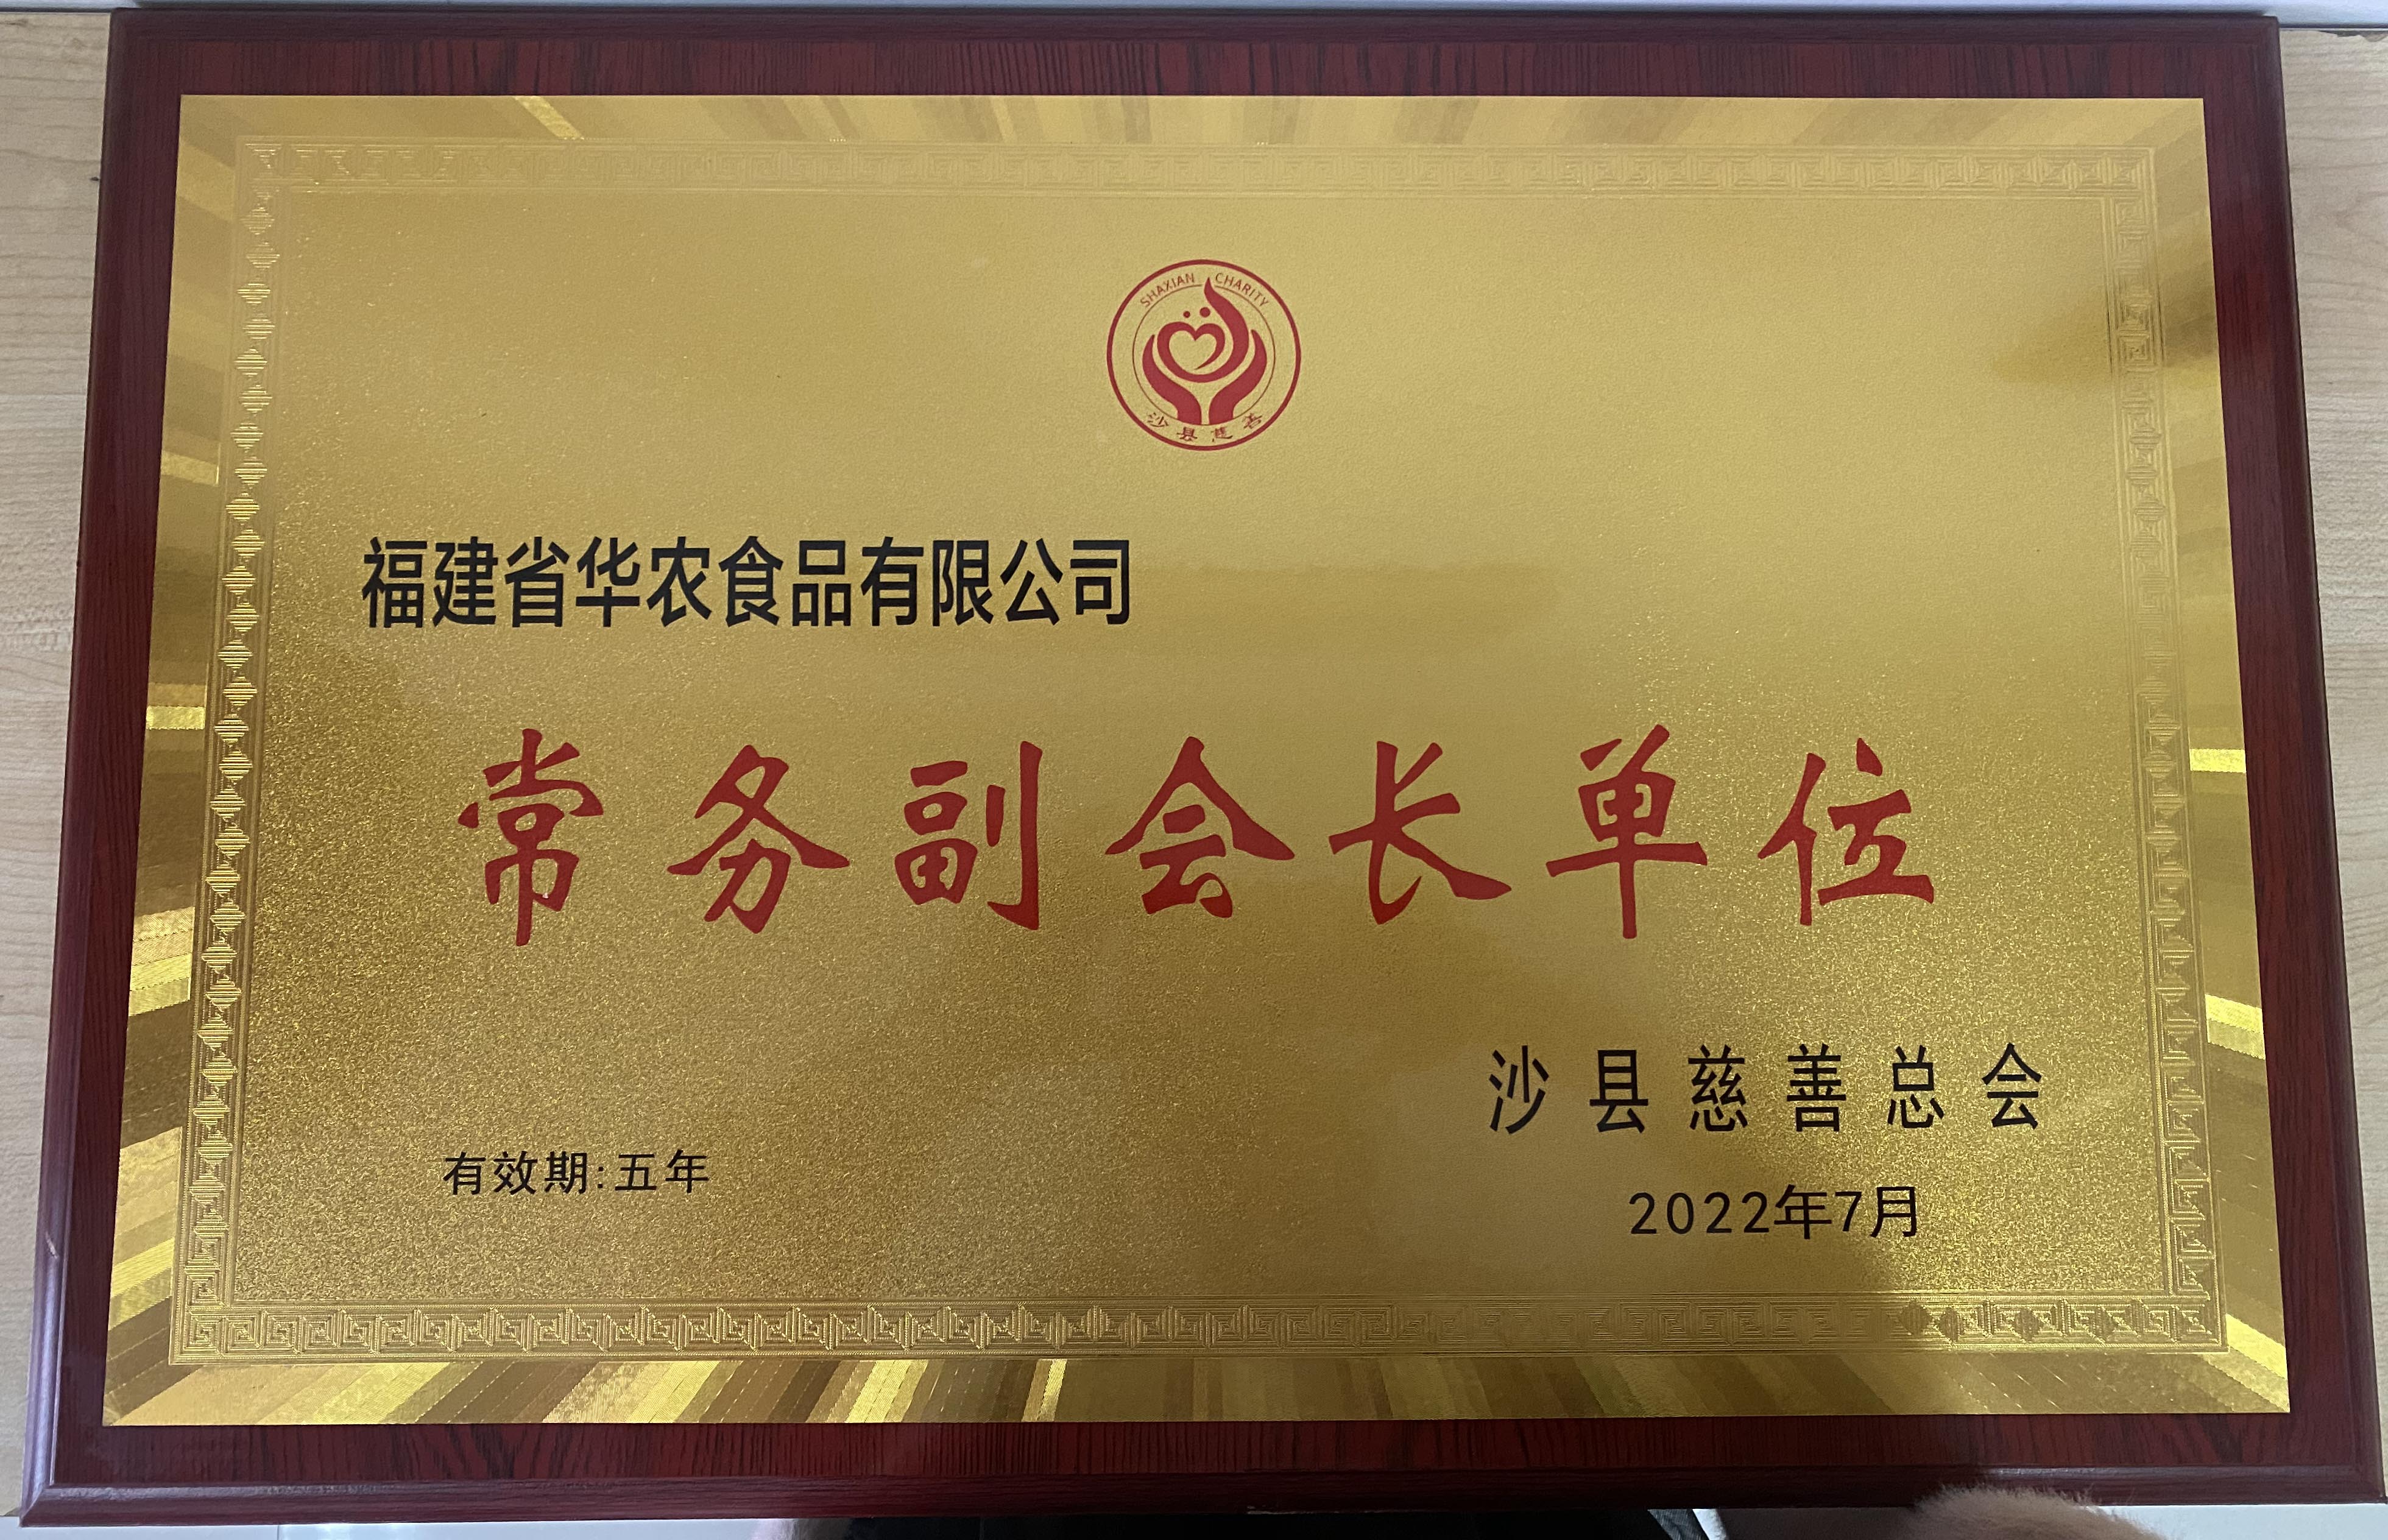 2022年7月荣获沙县慈善总会常务副会长单位荣誉称号